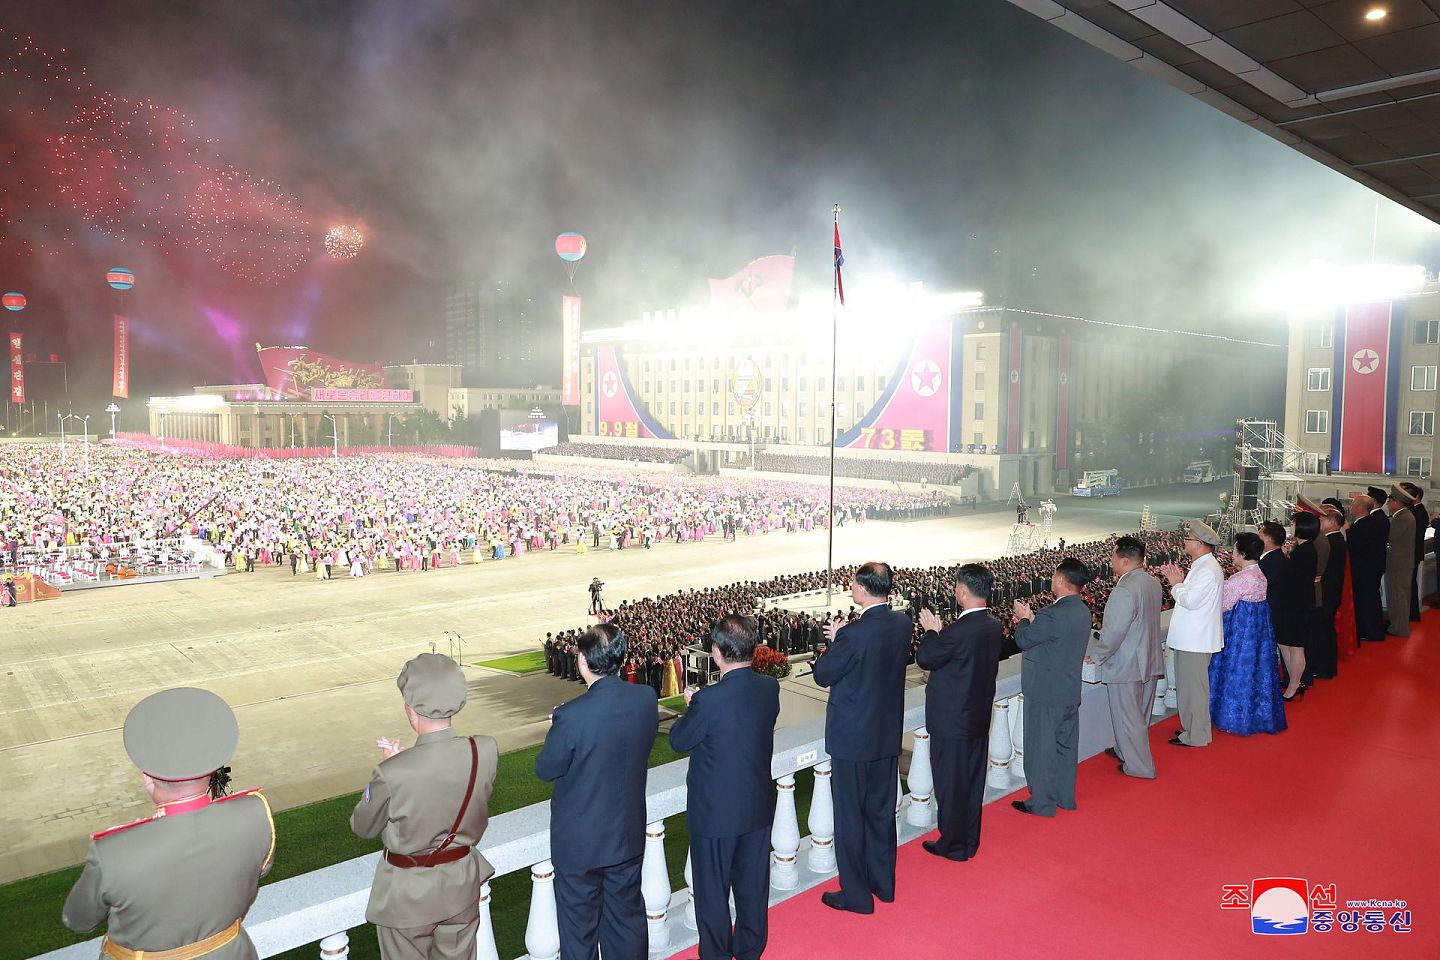 朝鲜庆祝建国73周年，中国国家主席习近平发贺电。图为2021年9月9日，朝鲜领导人金正恩与其他官员一同出席阅兵式。（Reuters）